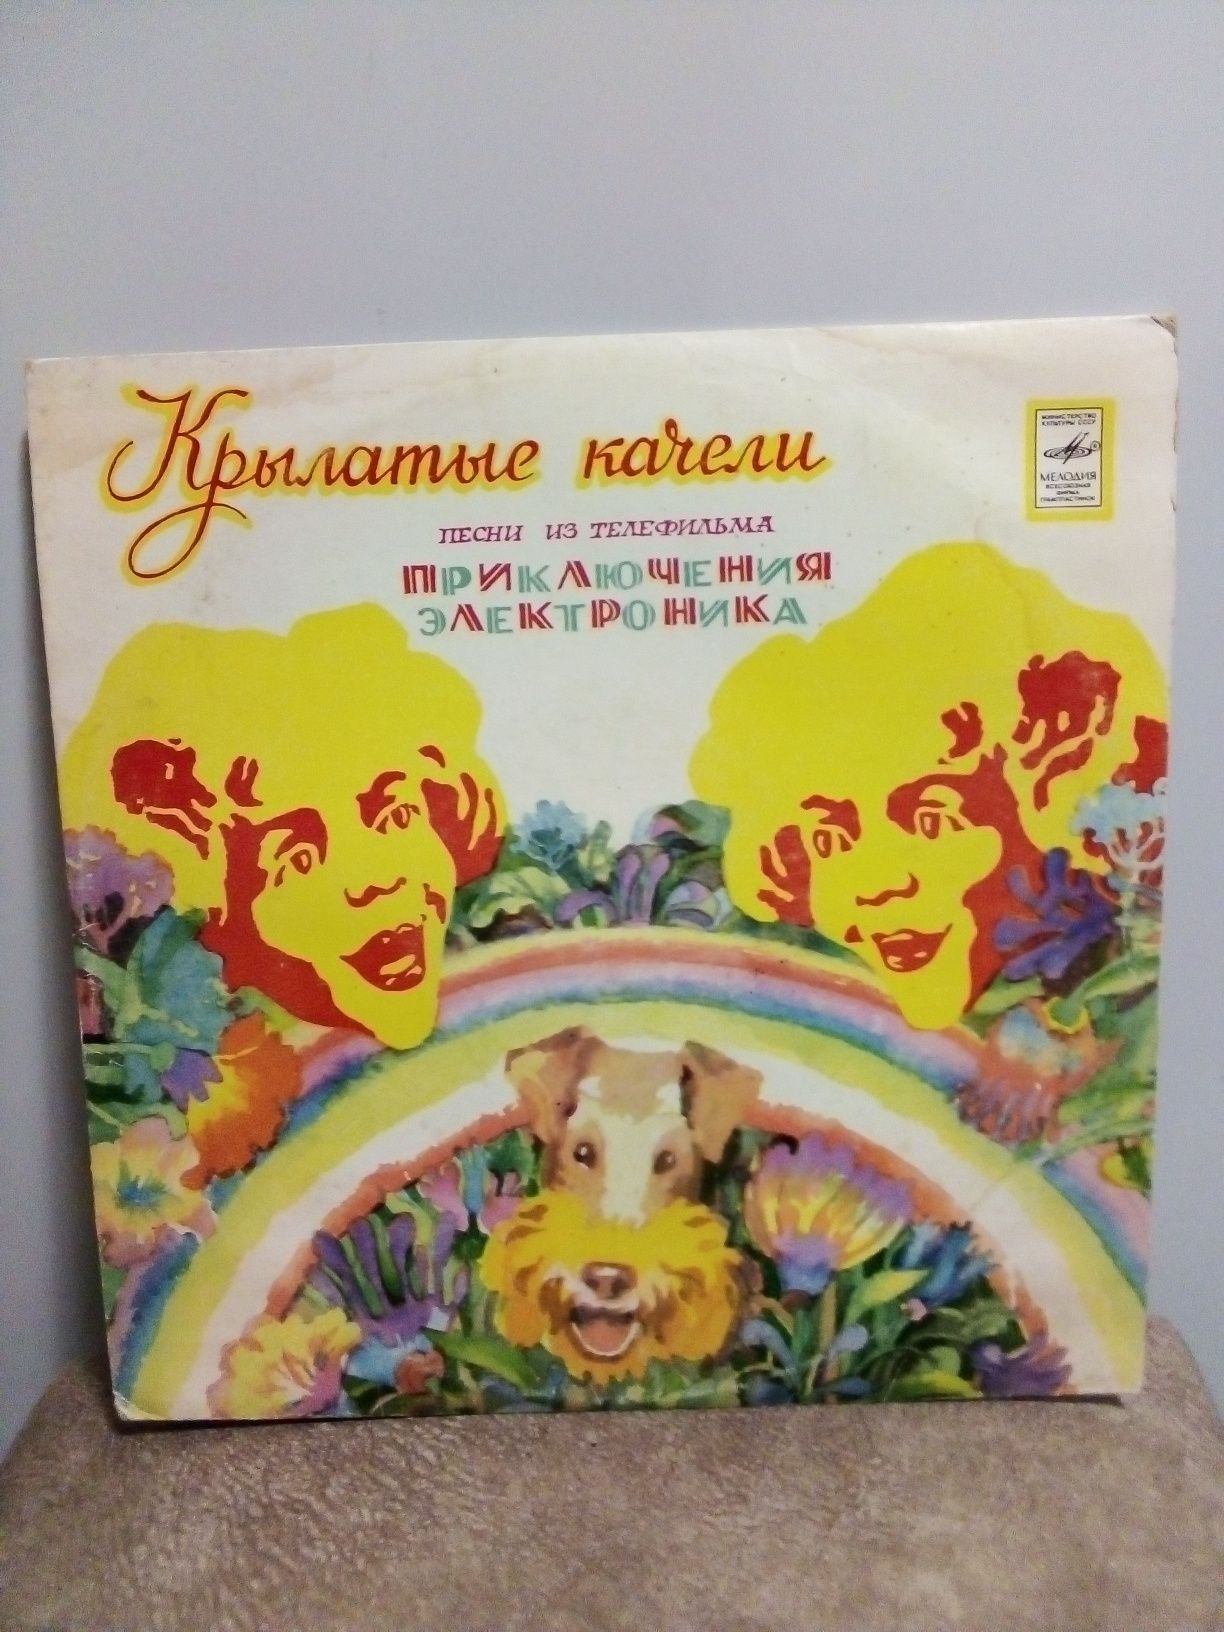 Детские Виниловые пластинки времен СССР